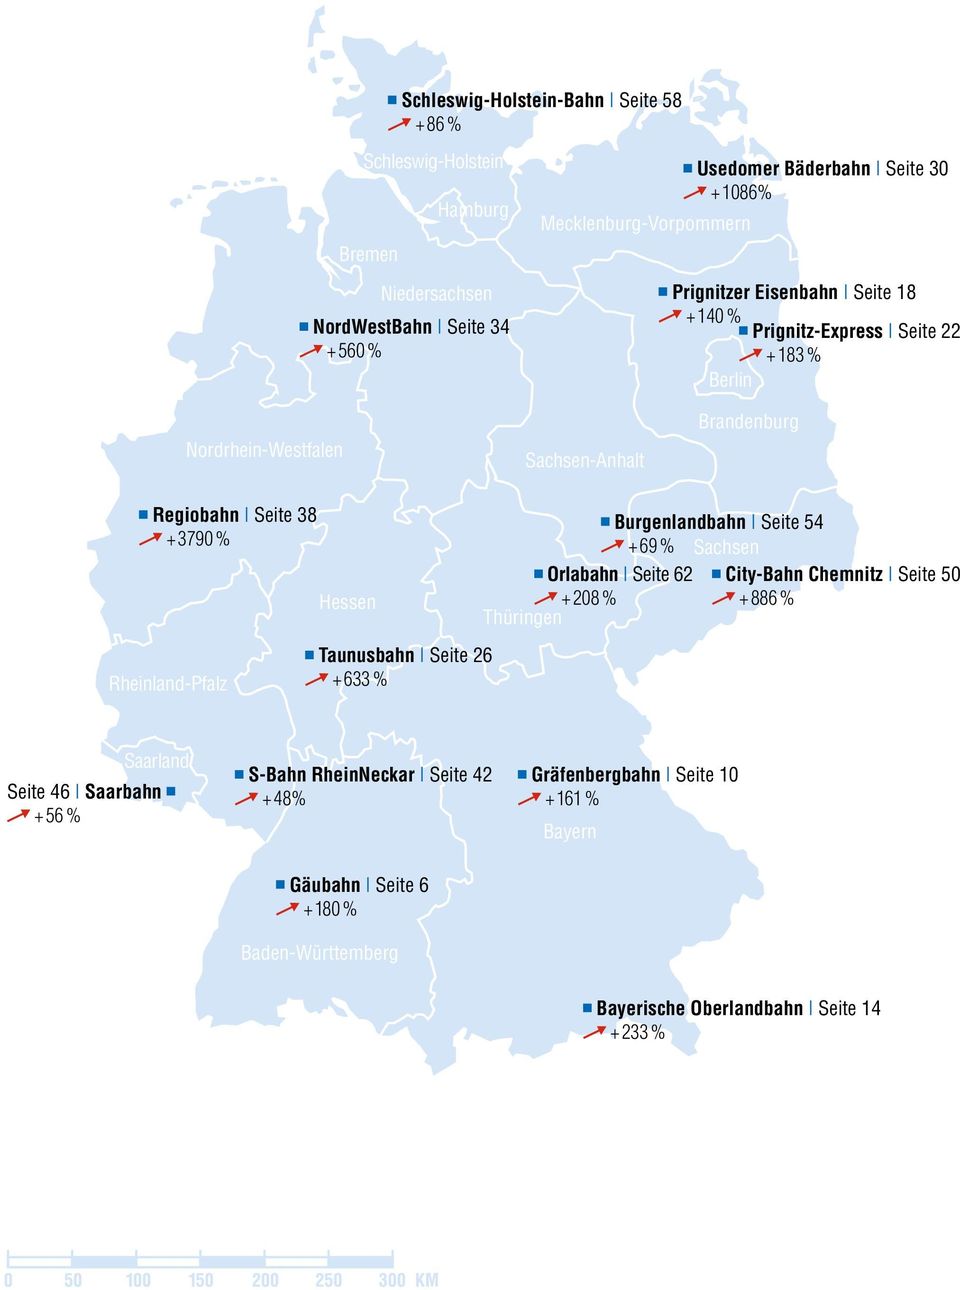 Burgenlandbahn Seite 54 + 69 % Sachsen Orlabahn Seite 62 City-Bahn Chemnitz Seite 50 + 208 % Thüringen + 886 % Rheinland-Pfalz Taunusbahn Seite 26 + 633 % Saarland Seite